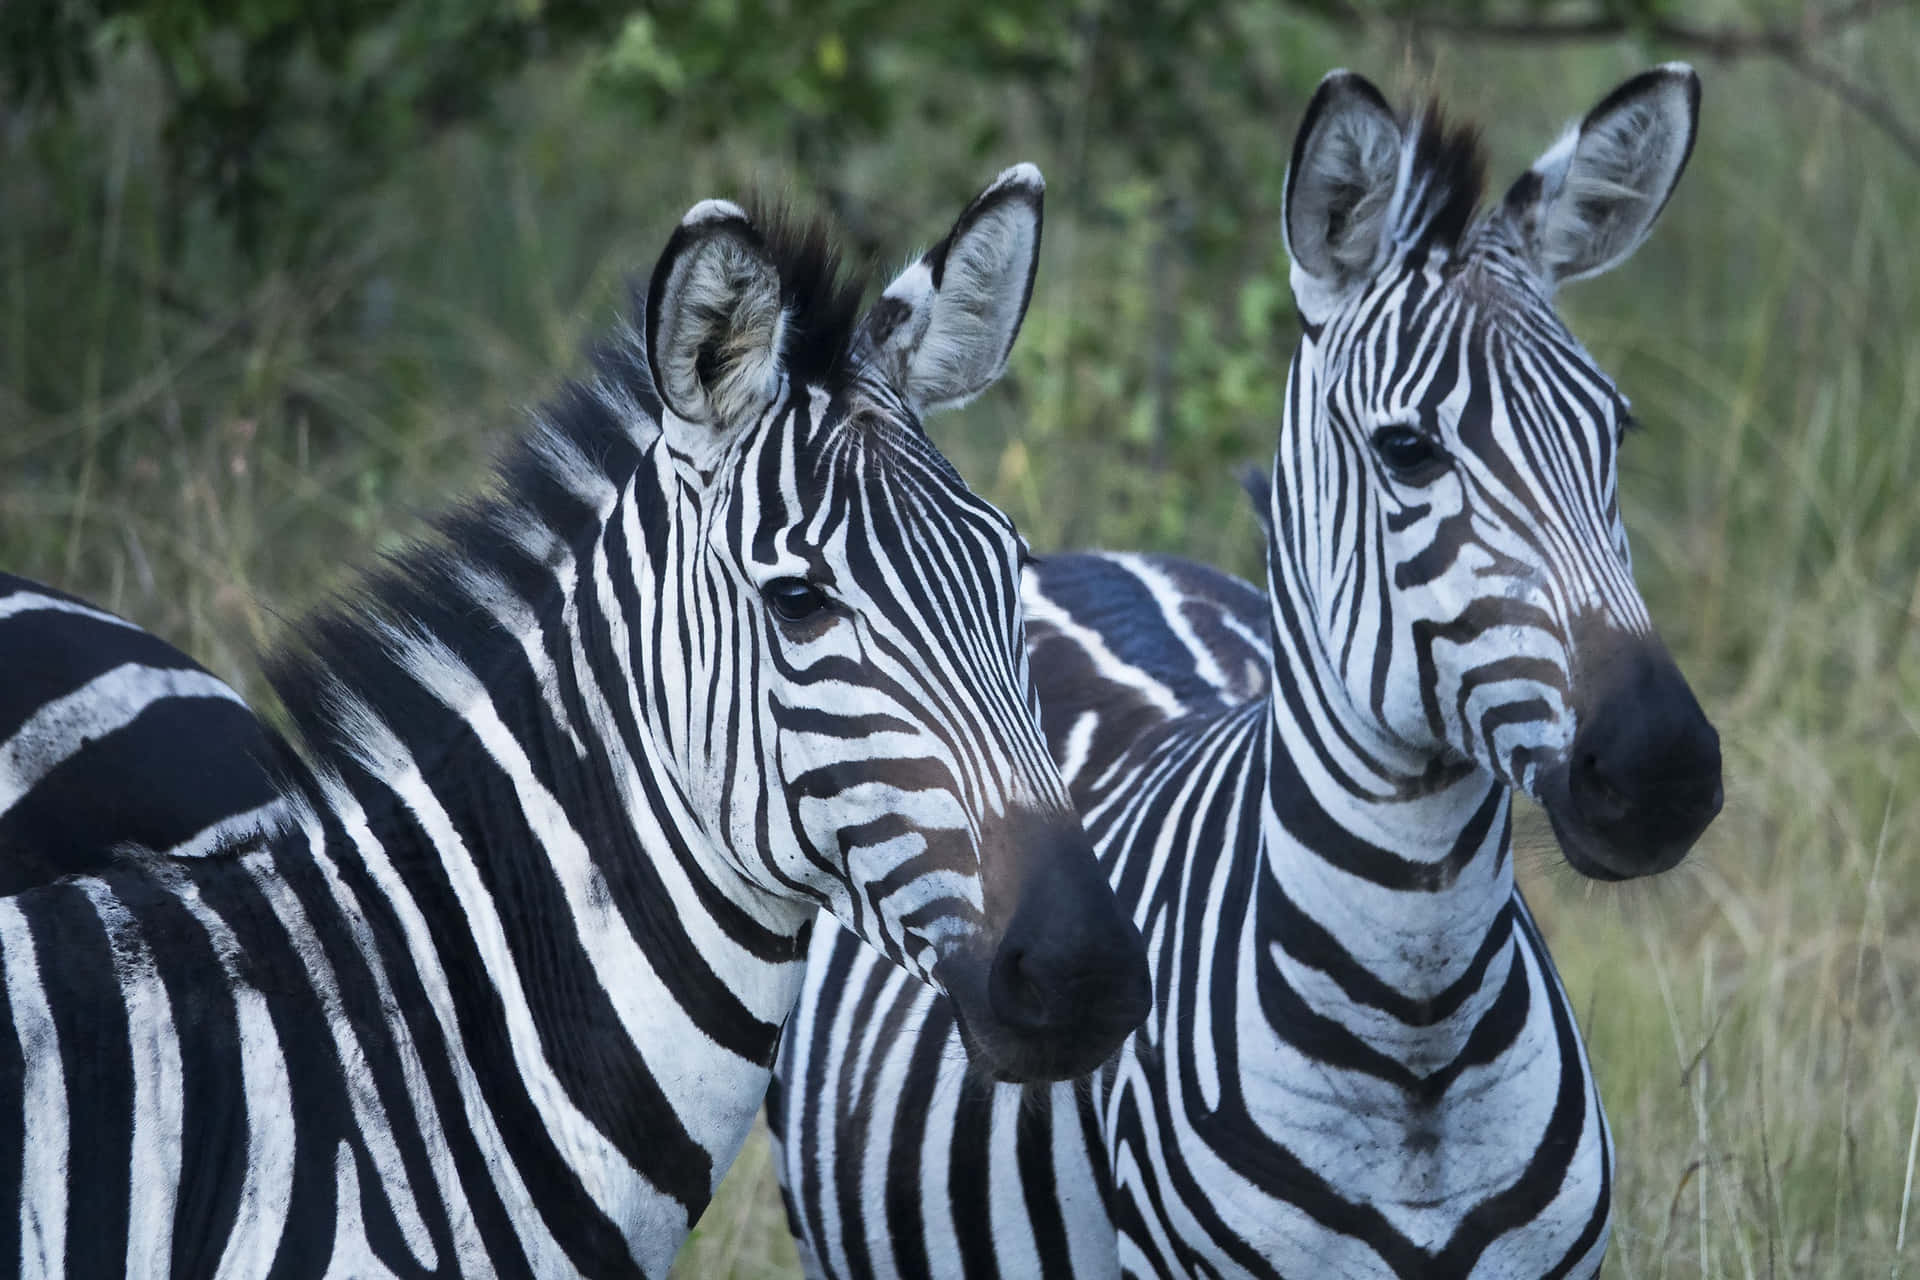 A zebra stands in its natural habitat.